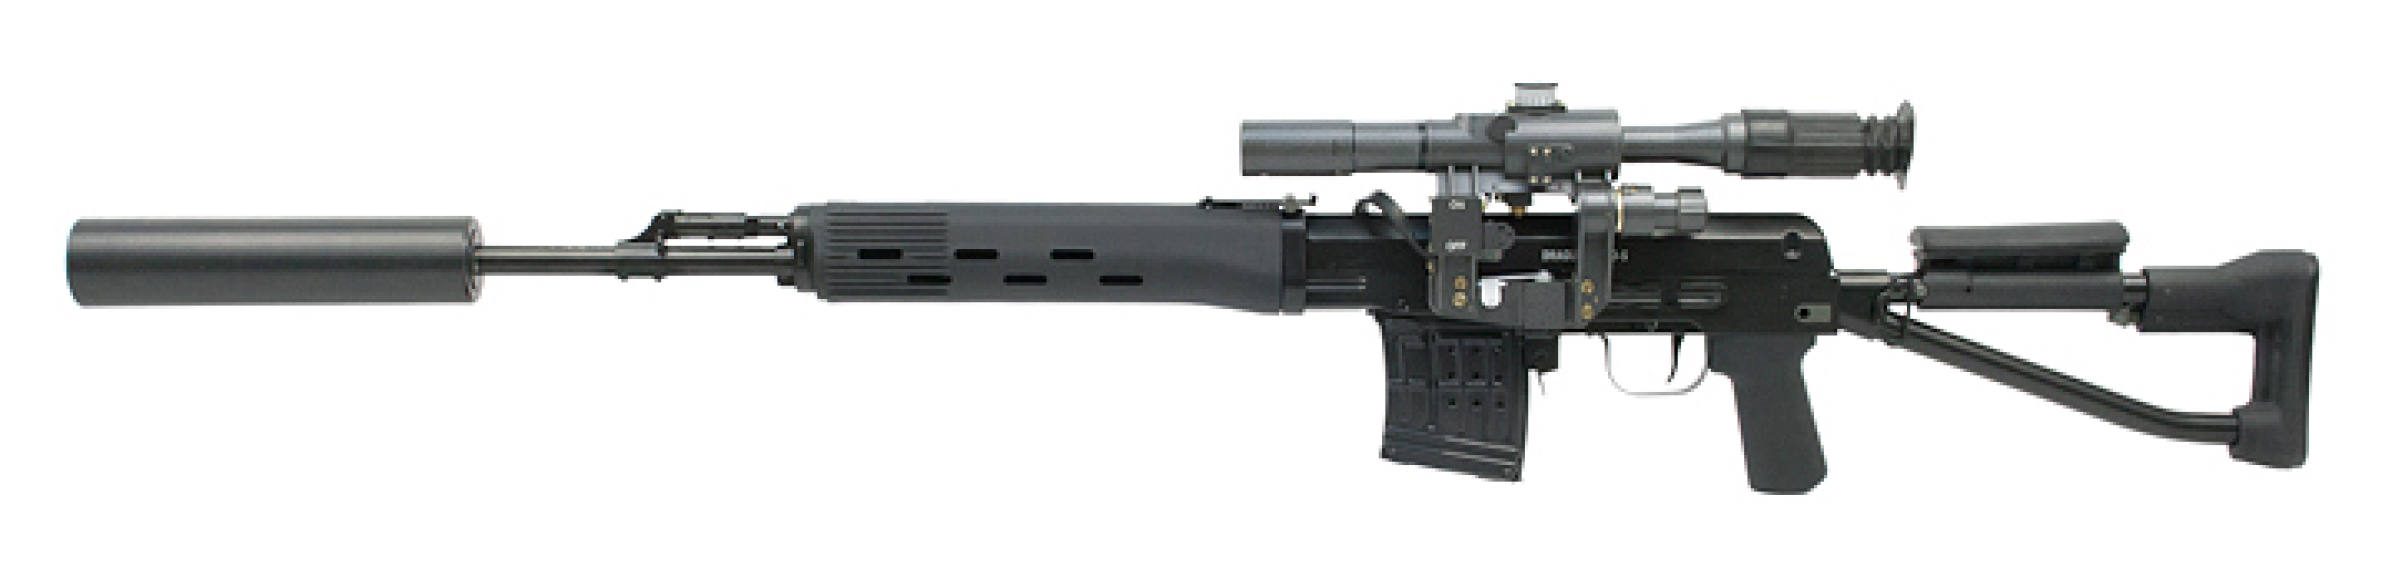 Снайперская винтовка СВД «HUNTER» серии «ORIGINAL»